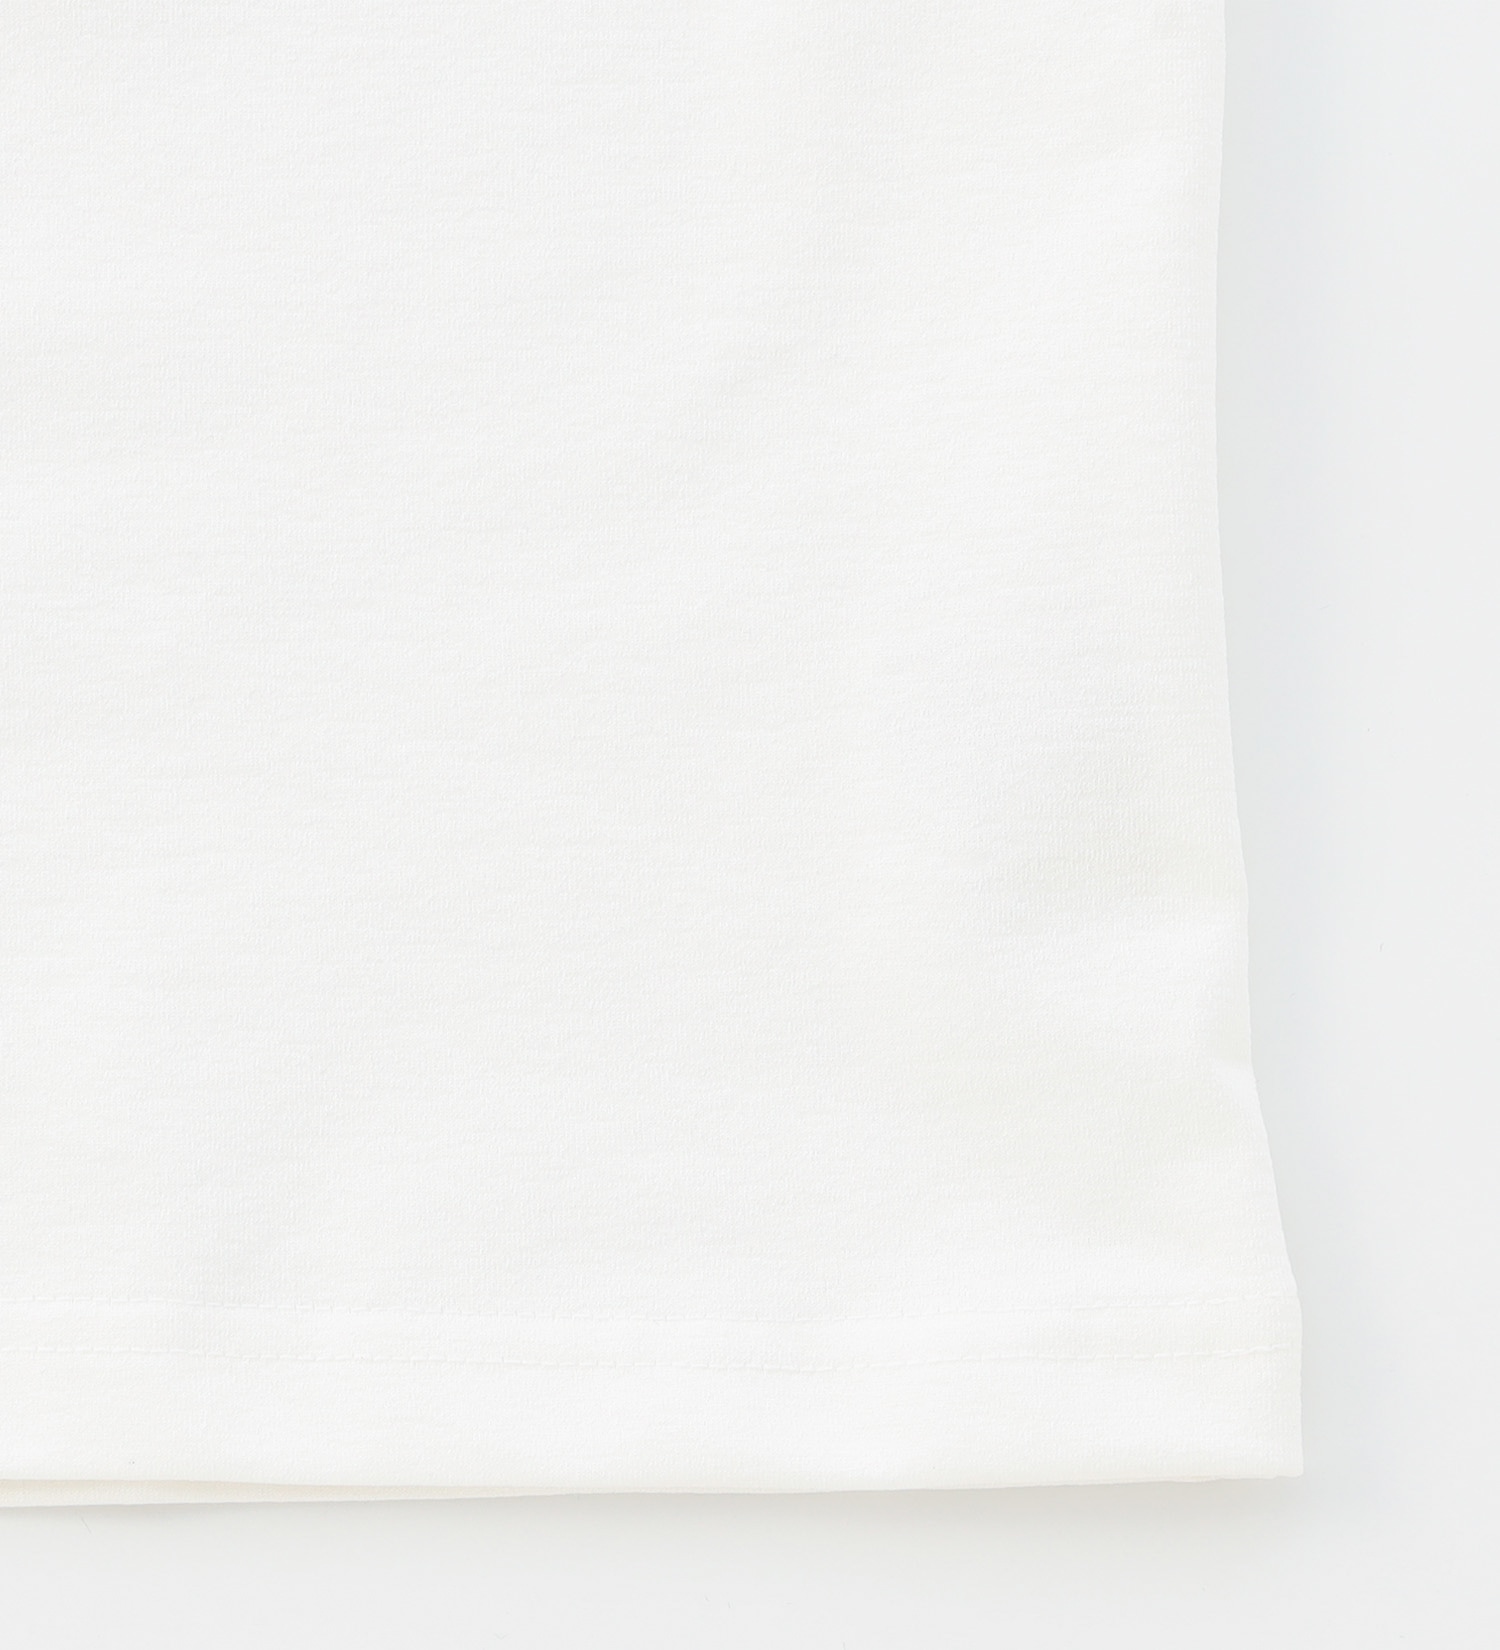 EDWIN(エドウイン)の【GW SALE】クルーネック ポケットTシャツ 半袖【アウトレット店舗・WEB限定】|トップス/Tシャツ/カットソー/メンズ|ホワイト